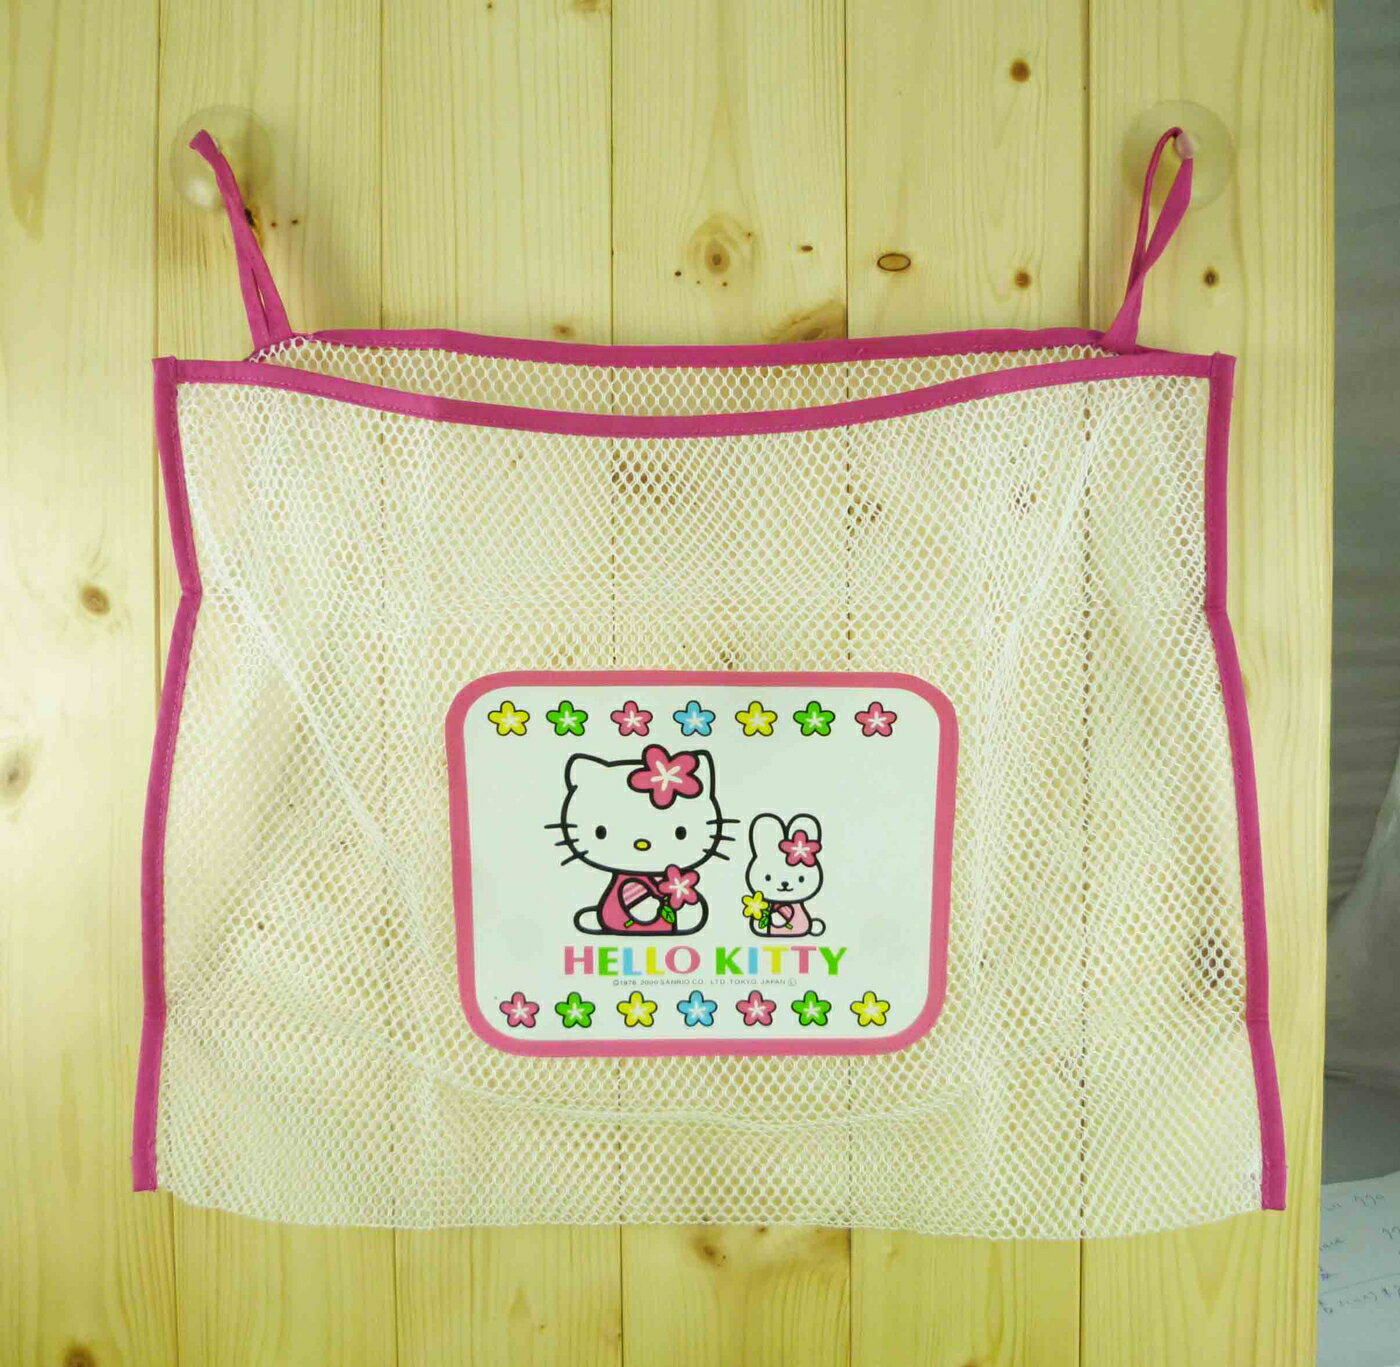 【震撼精品百貨】Hello Kitty 凱蒂貓 吸盤置物袋【共1款】 震撼日式精品百貨